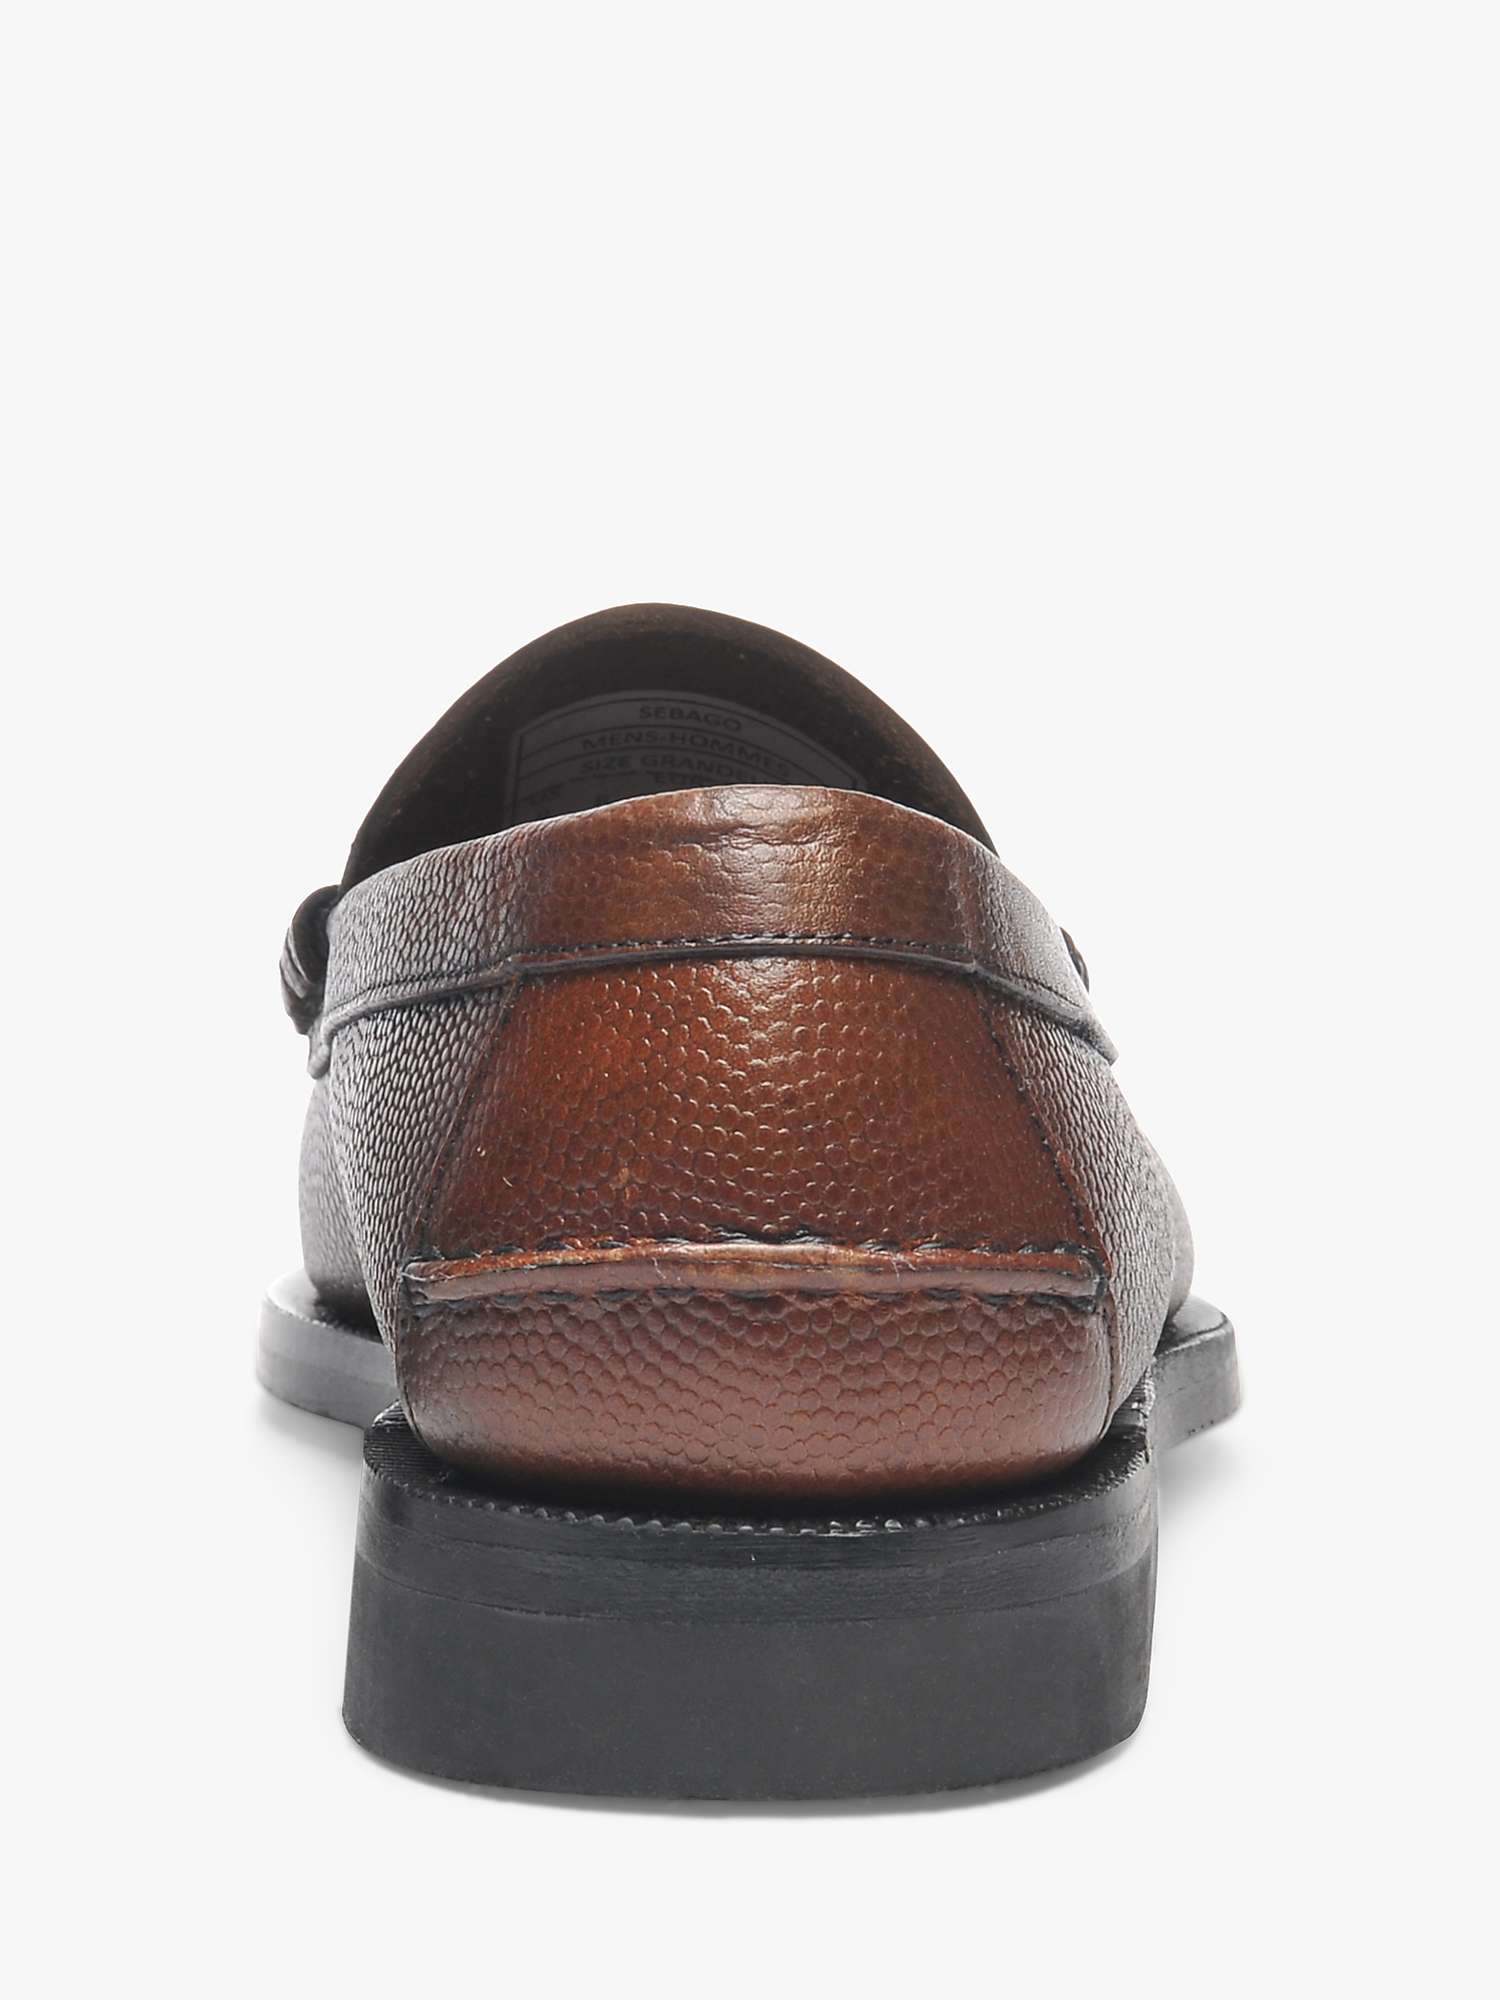 Buy Sebago Classic Dan Tumbled Loafers, Brown Online at johnlewis.com